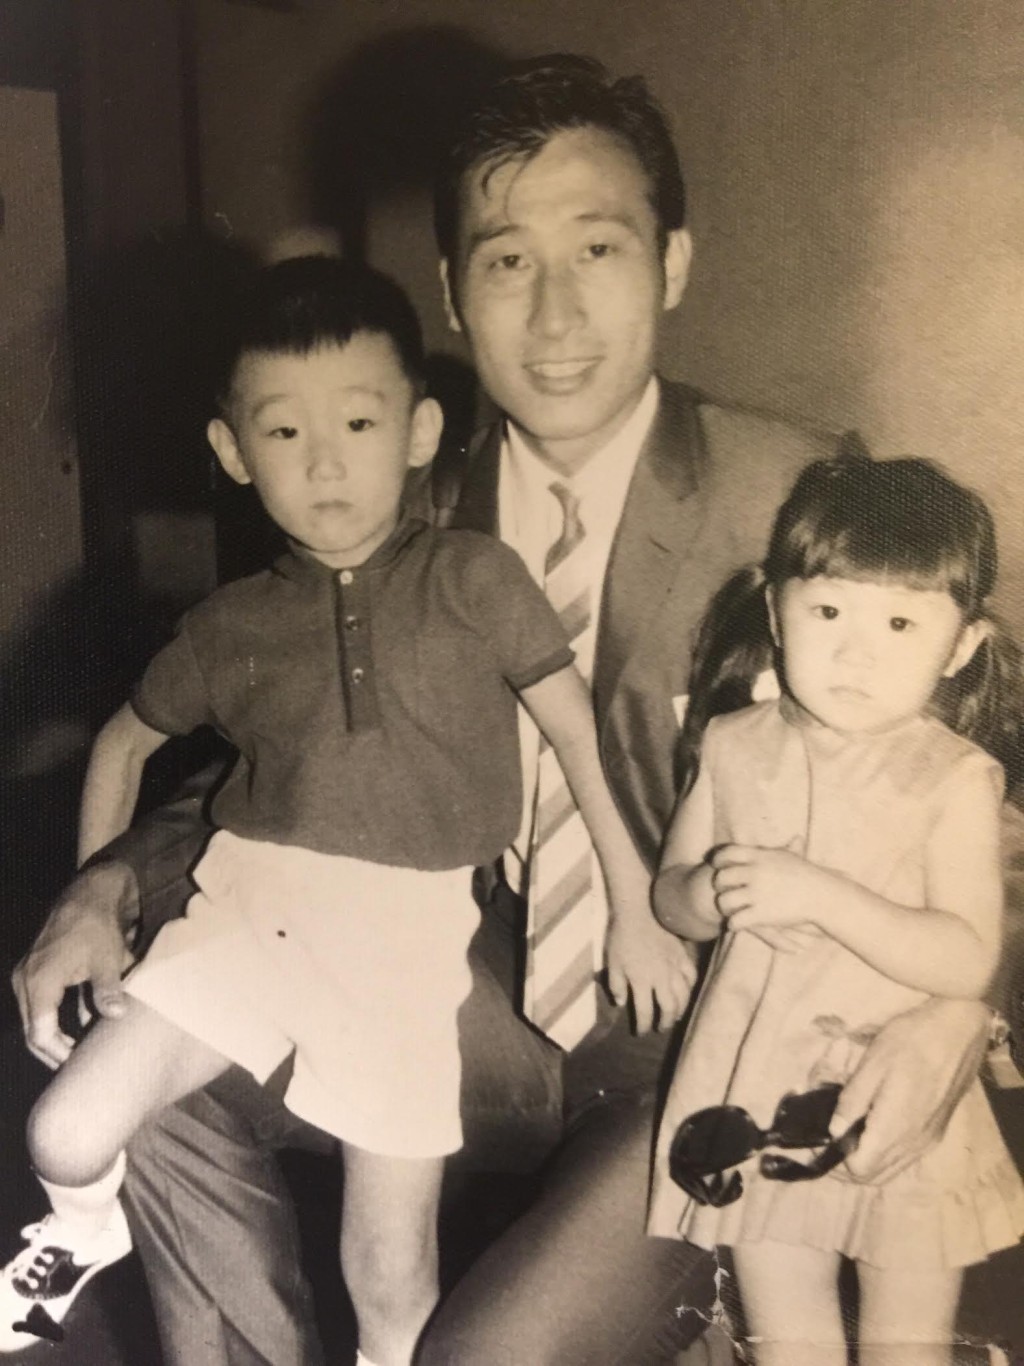 张学润虽然为形象指导，其实他出身自足球世家，父亲更是香港60年代球王张子岱。